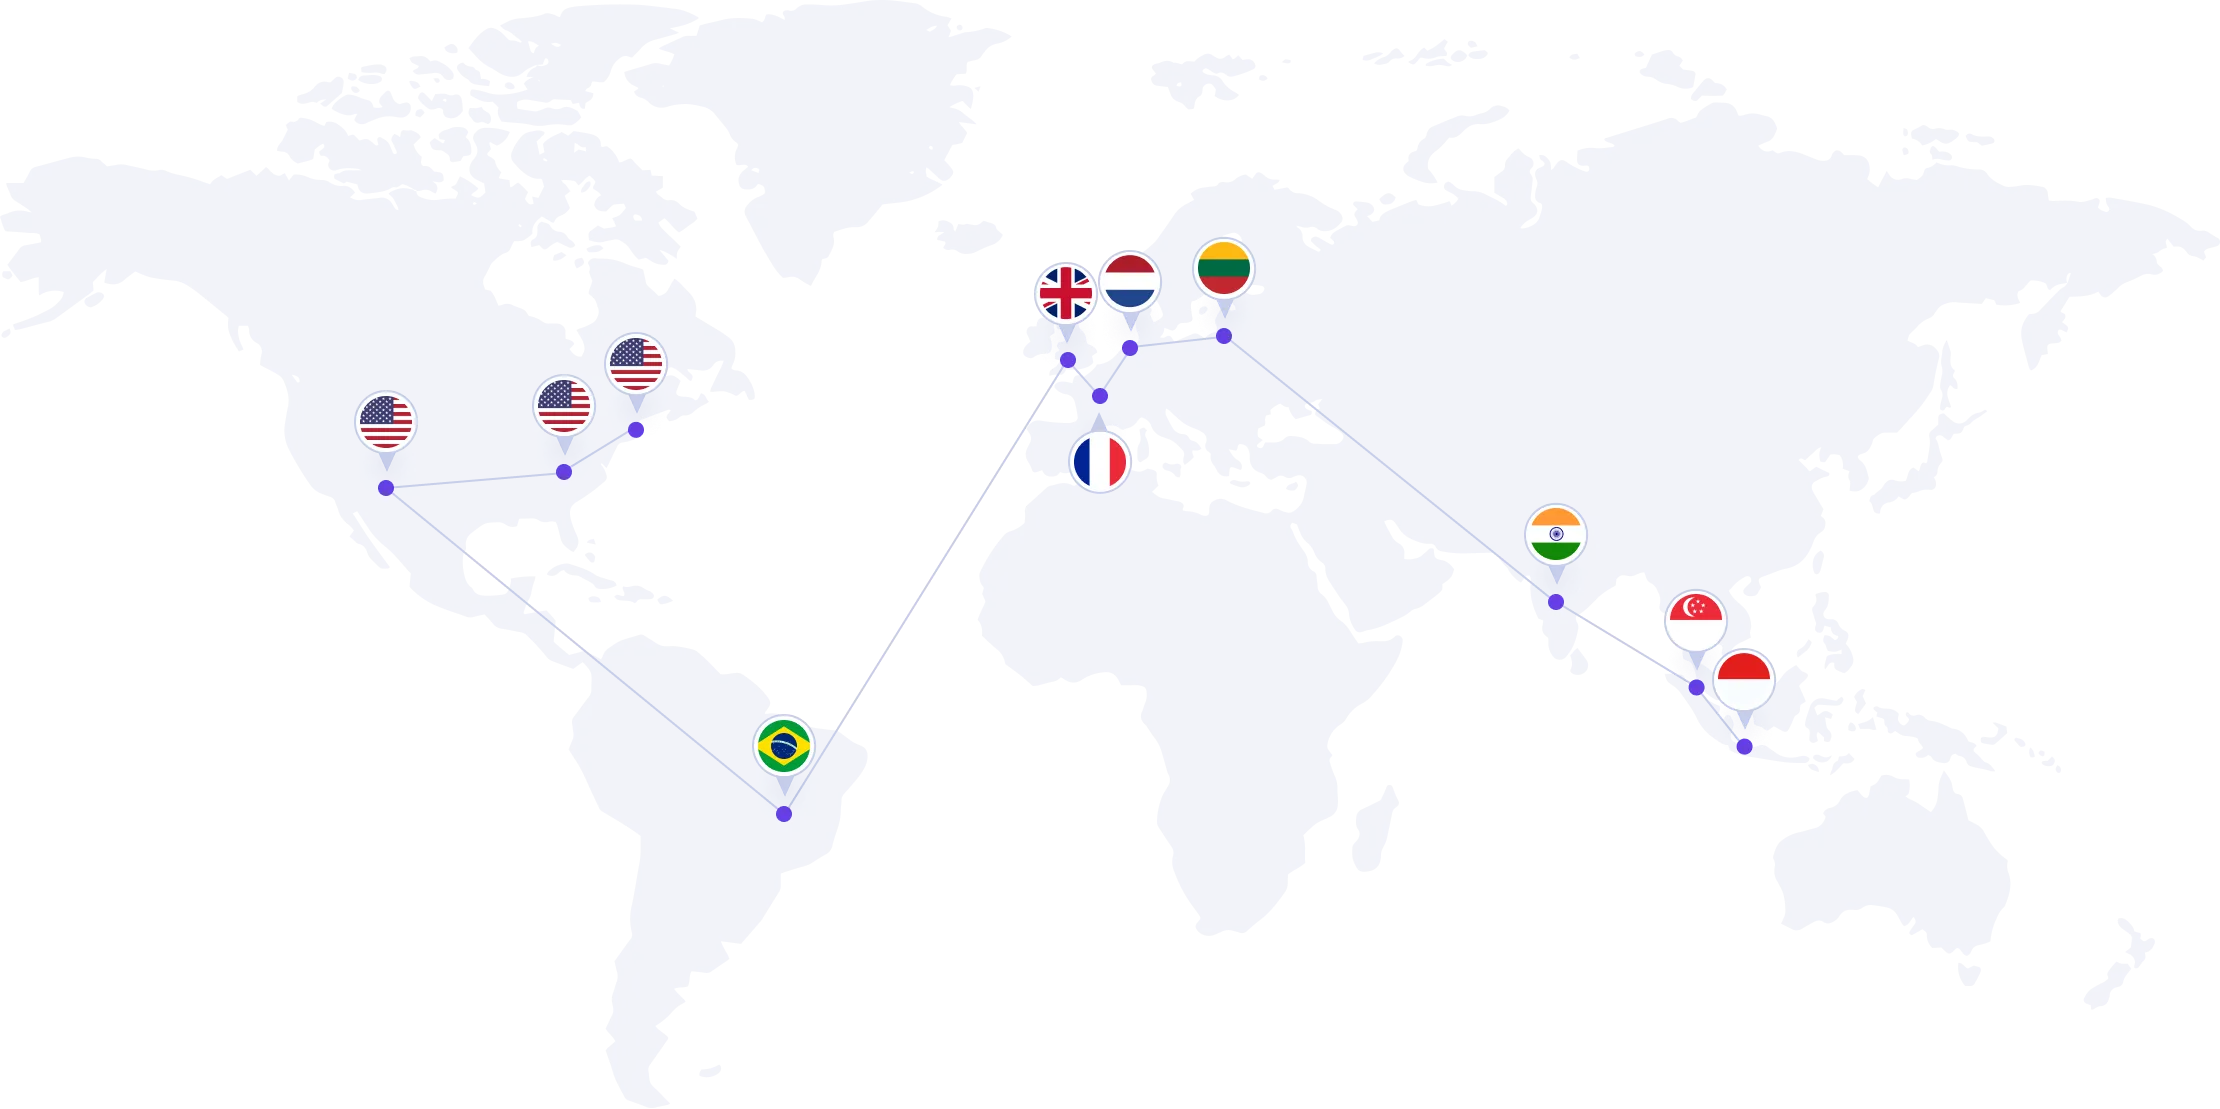 Centros de datos por todo el mundo